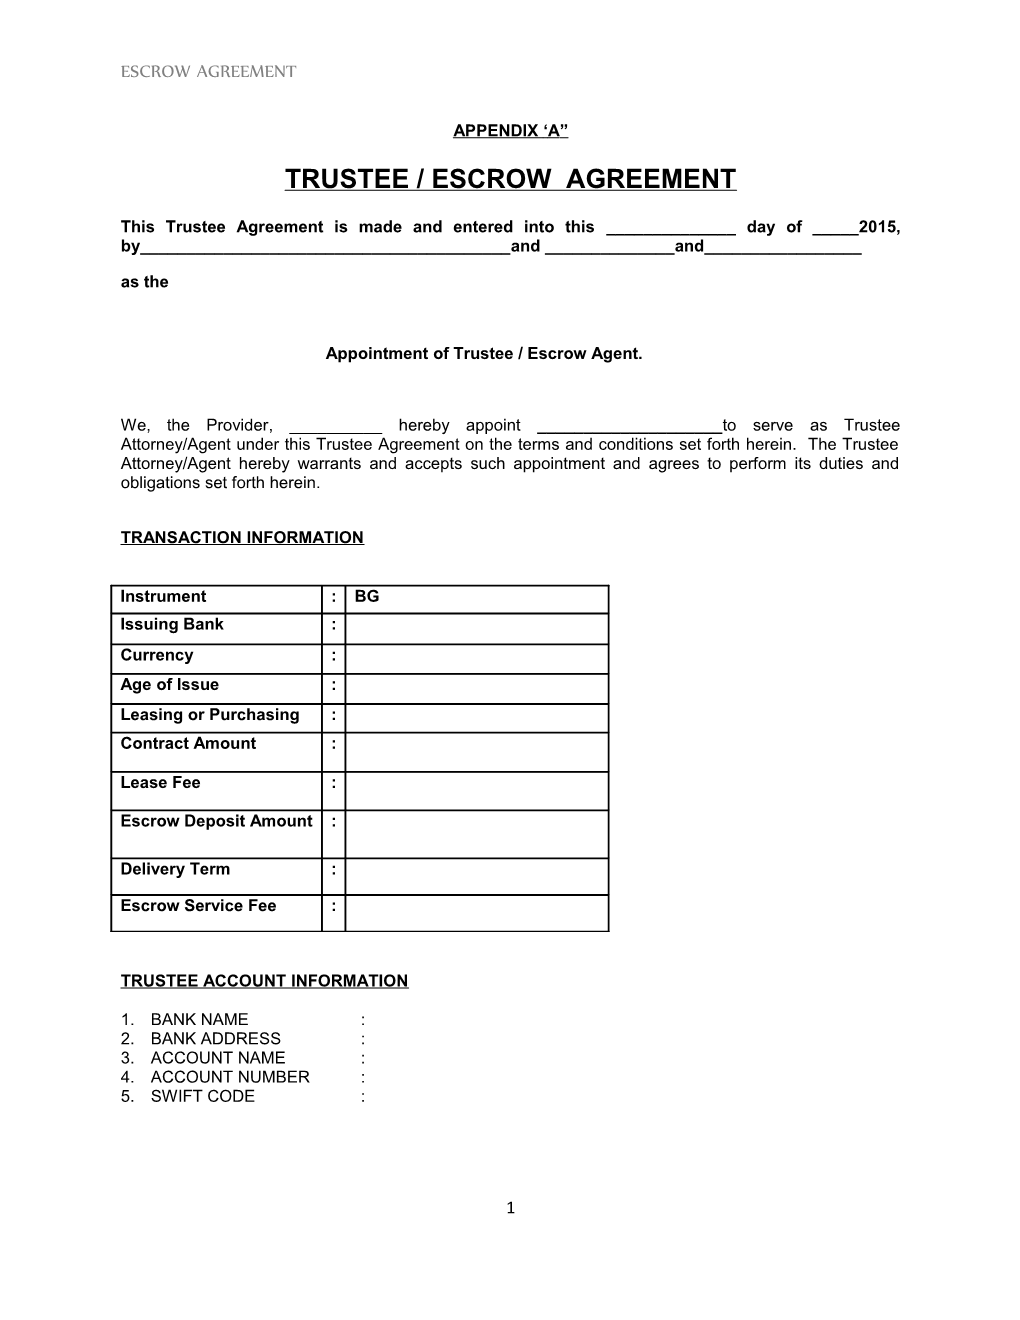 Trustee / Escrow Agreement